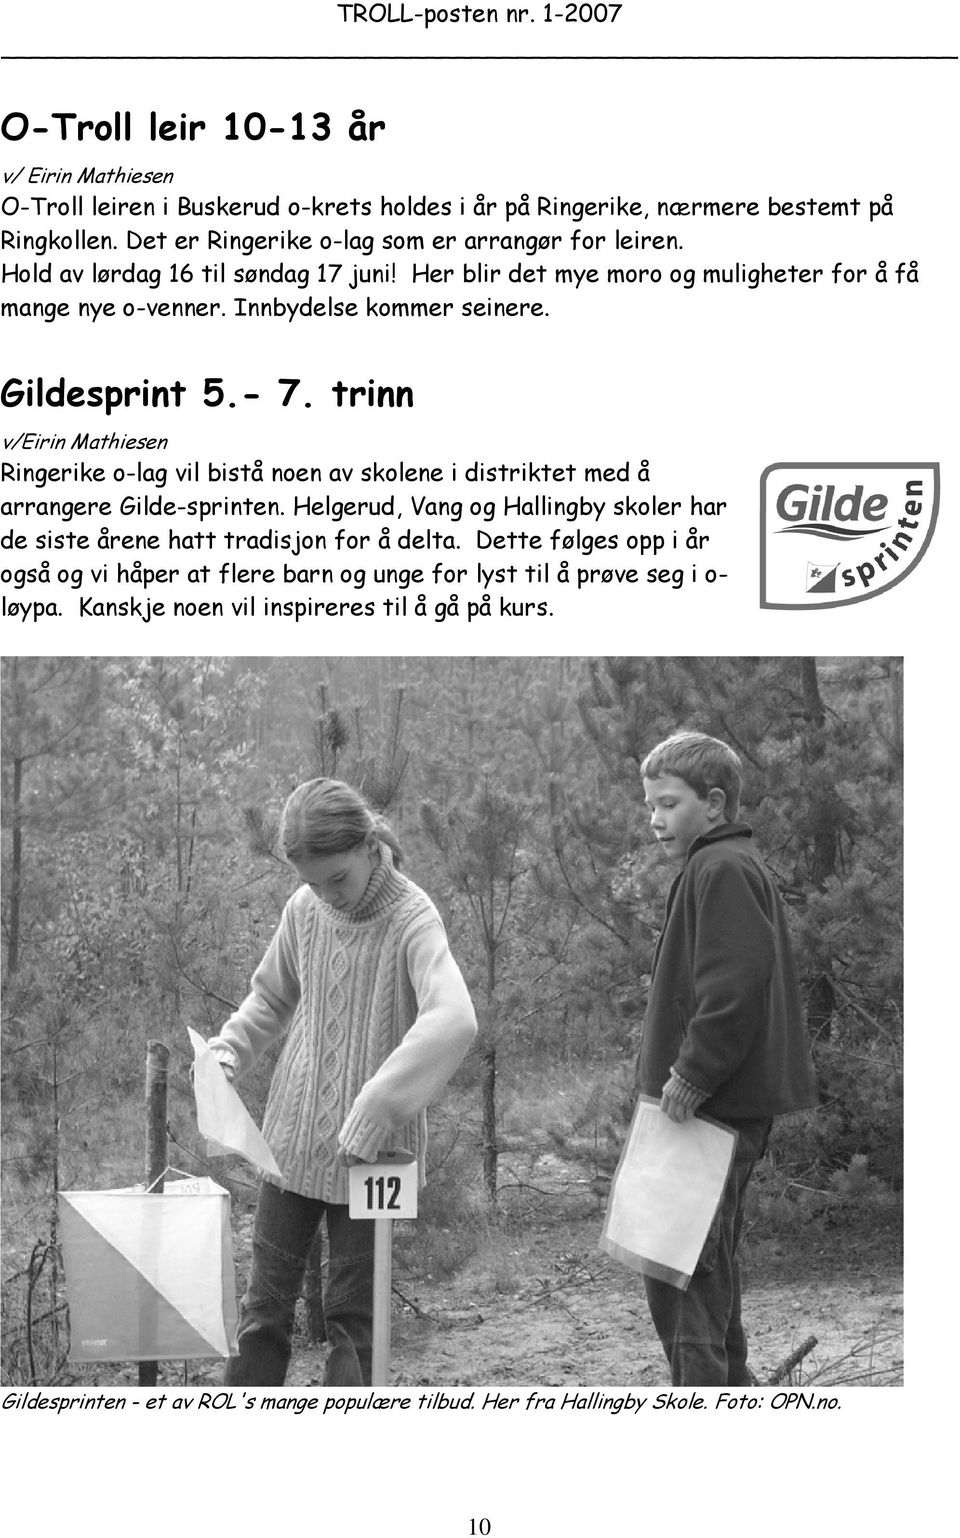 trinn v/eirin Mathiesen Ringerike o-lag vil bistå noen av skolene i distriktet med å arrangere Gilde-sprinten.